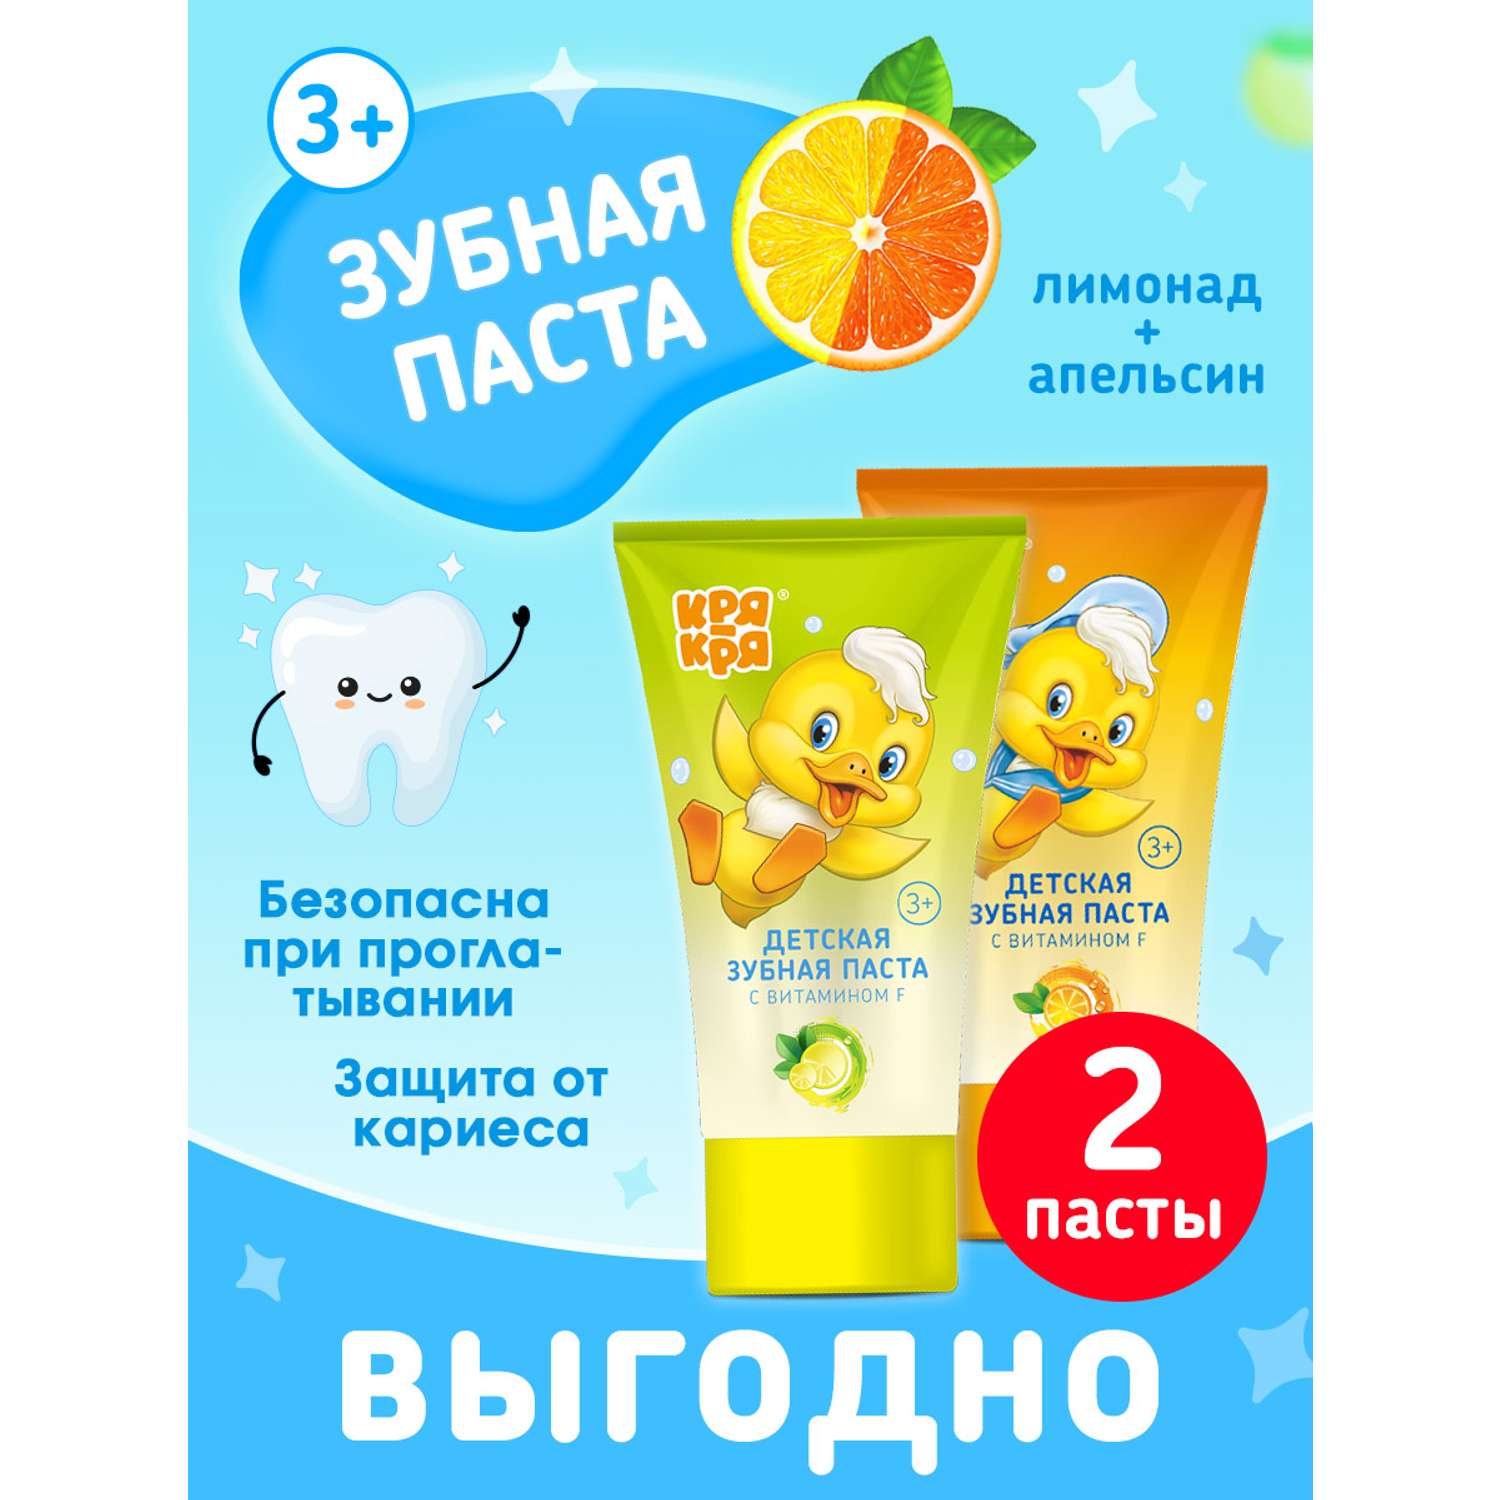 Паста зубная КРЯ-КРЯ лимонад и Апельсин набор - фото 2